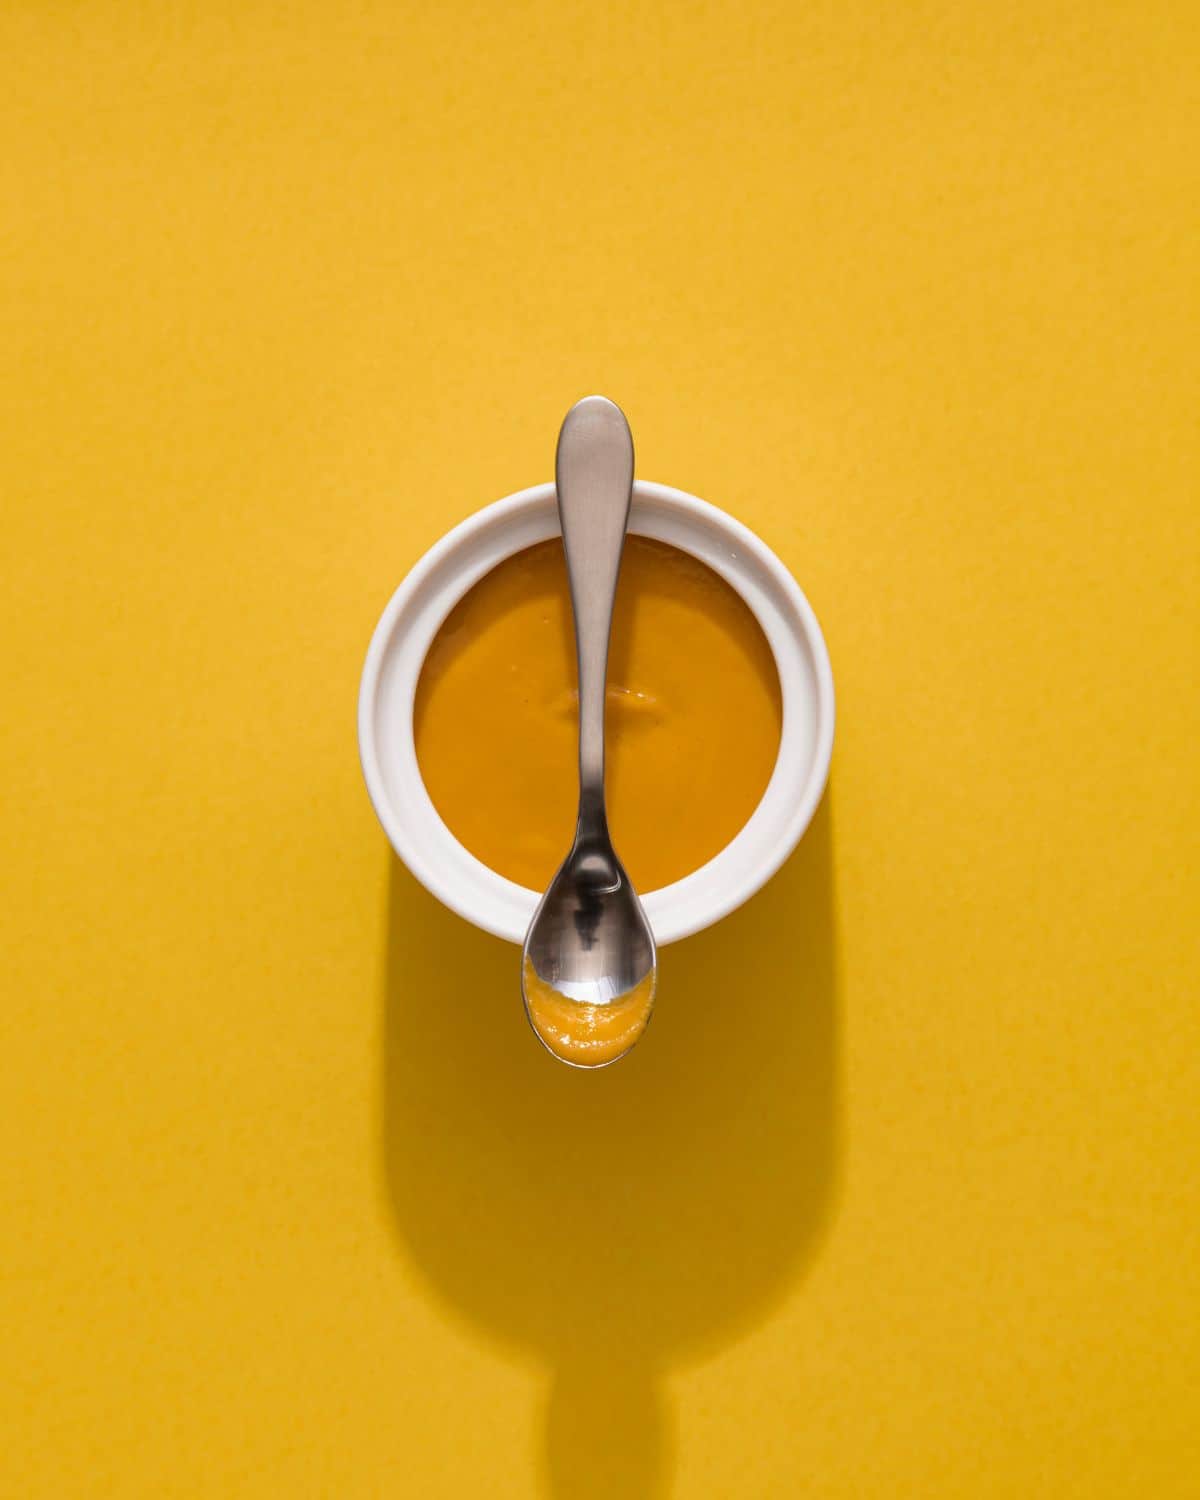 English mustard in a white ramekin with a teaspoon on top of it.